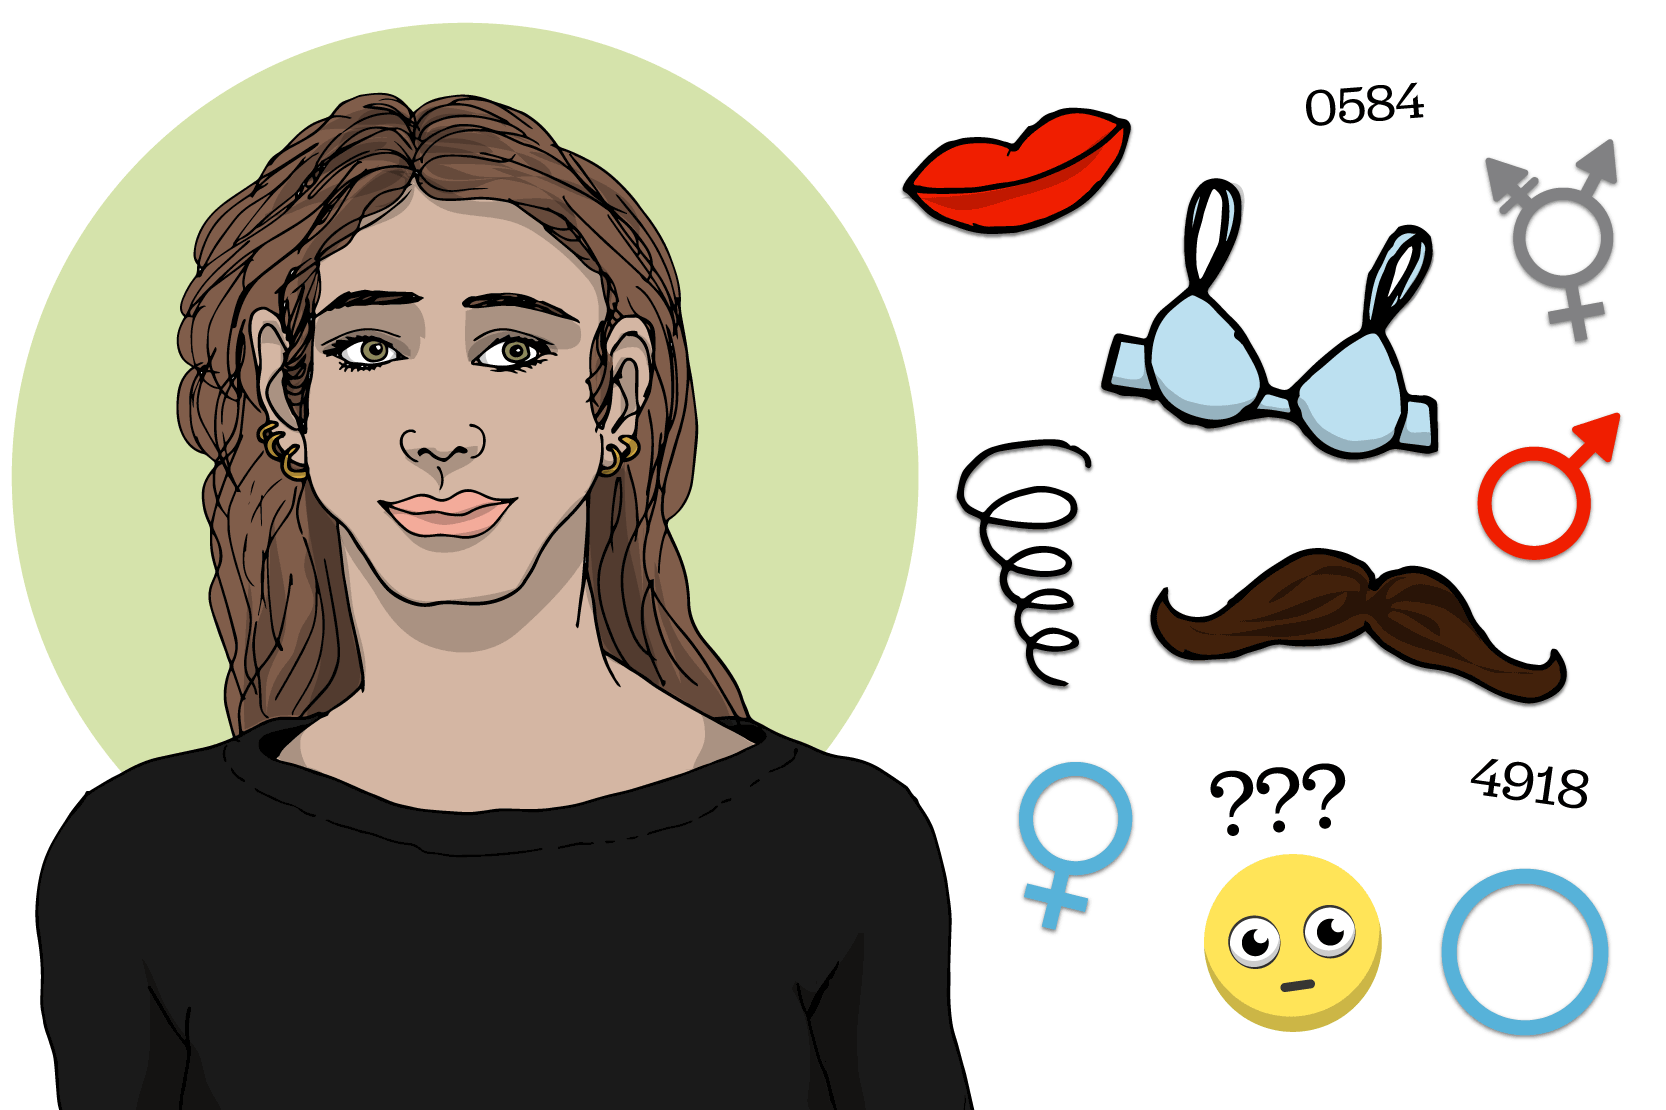  Person som är omgiven av symboler som läppar, bh, mustasch, frågetecken och symboler för kön.